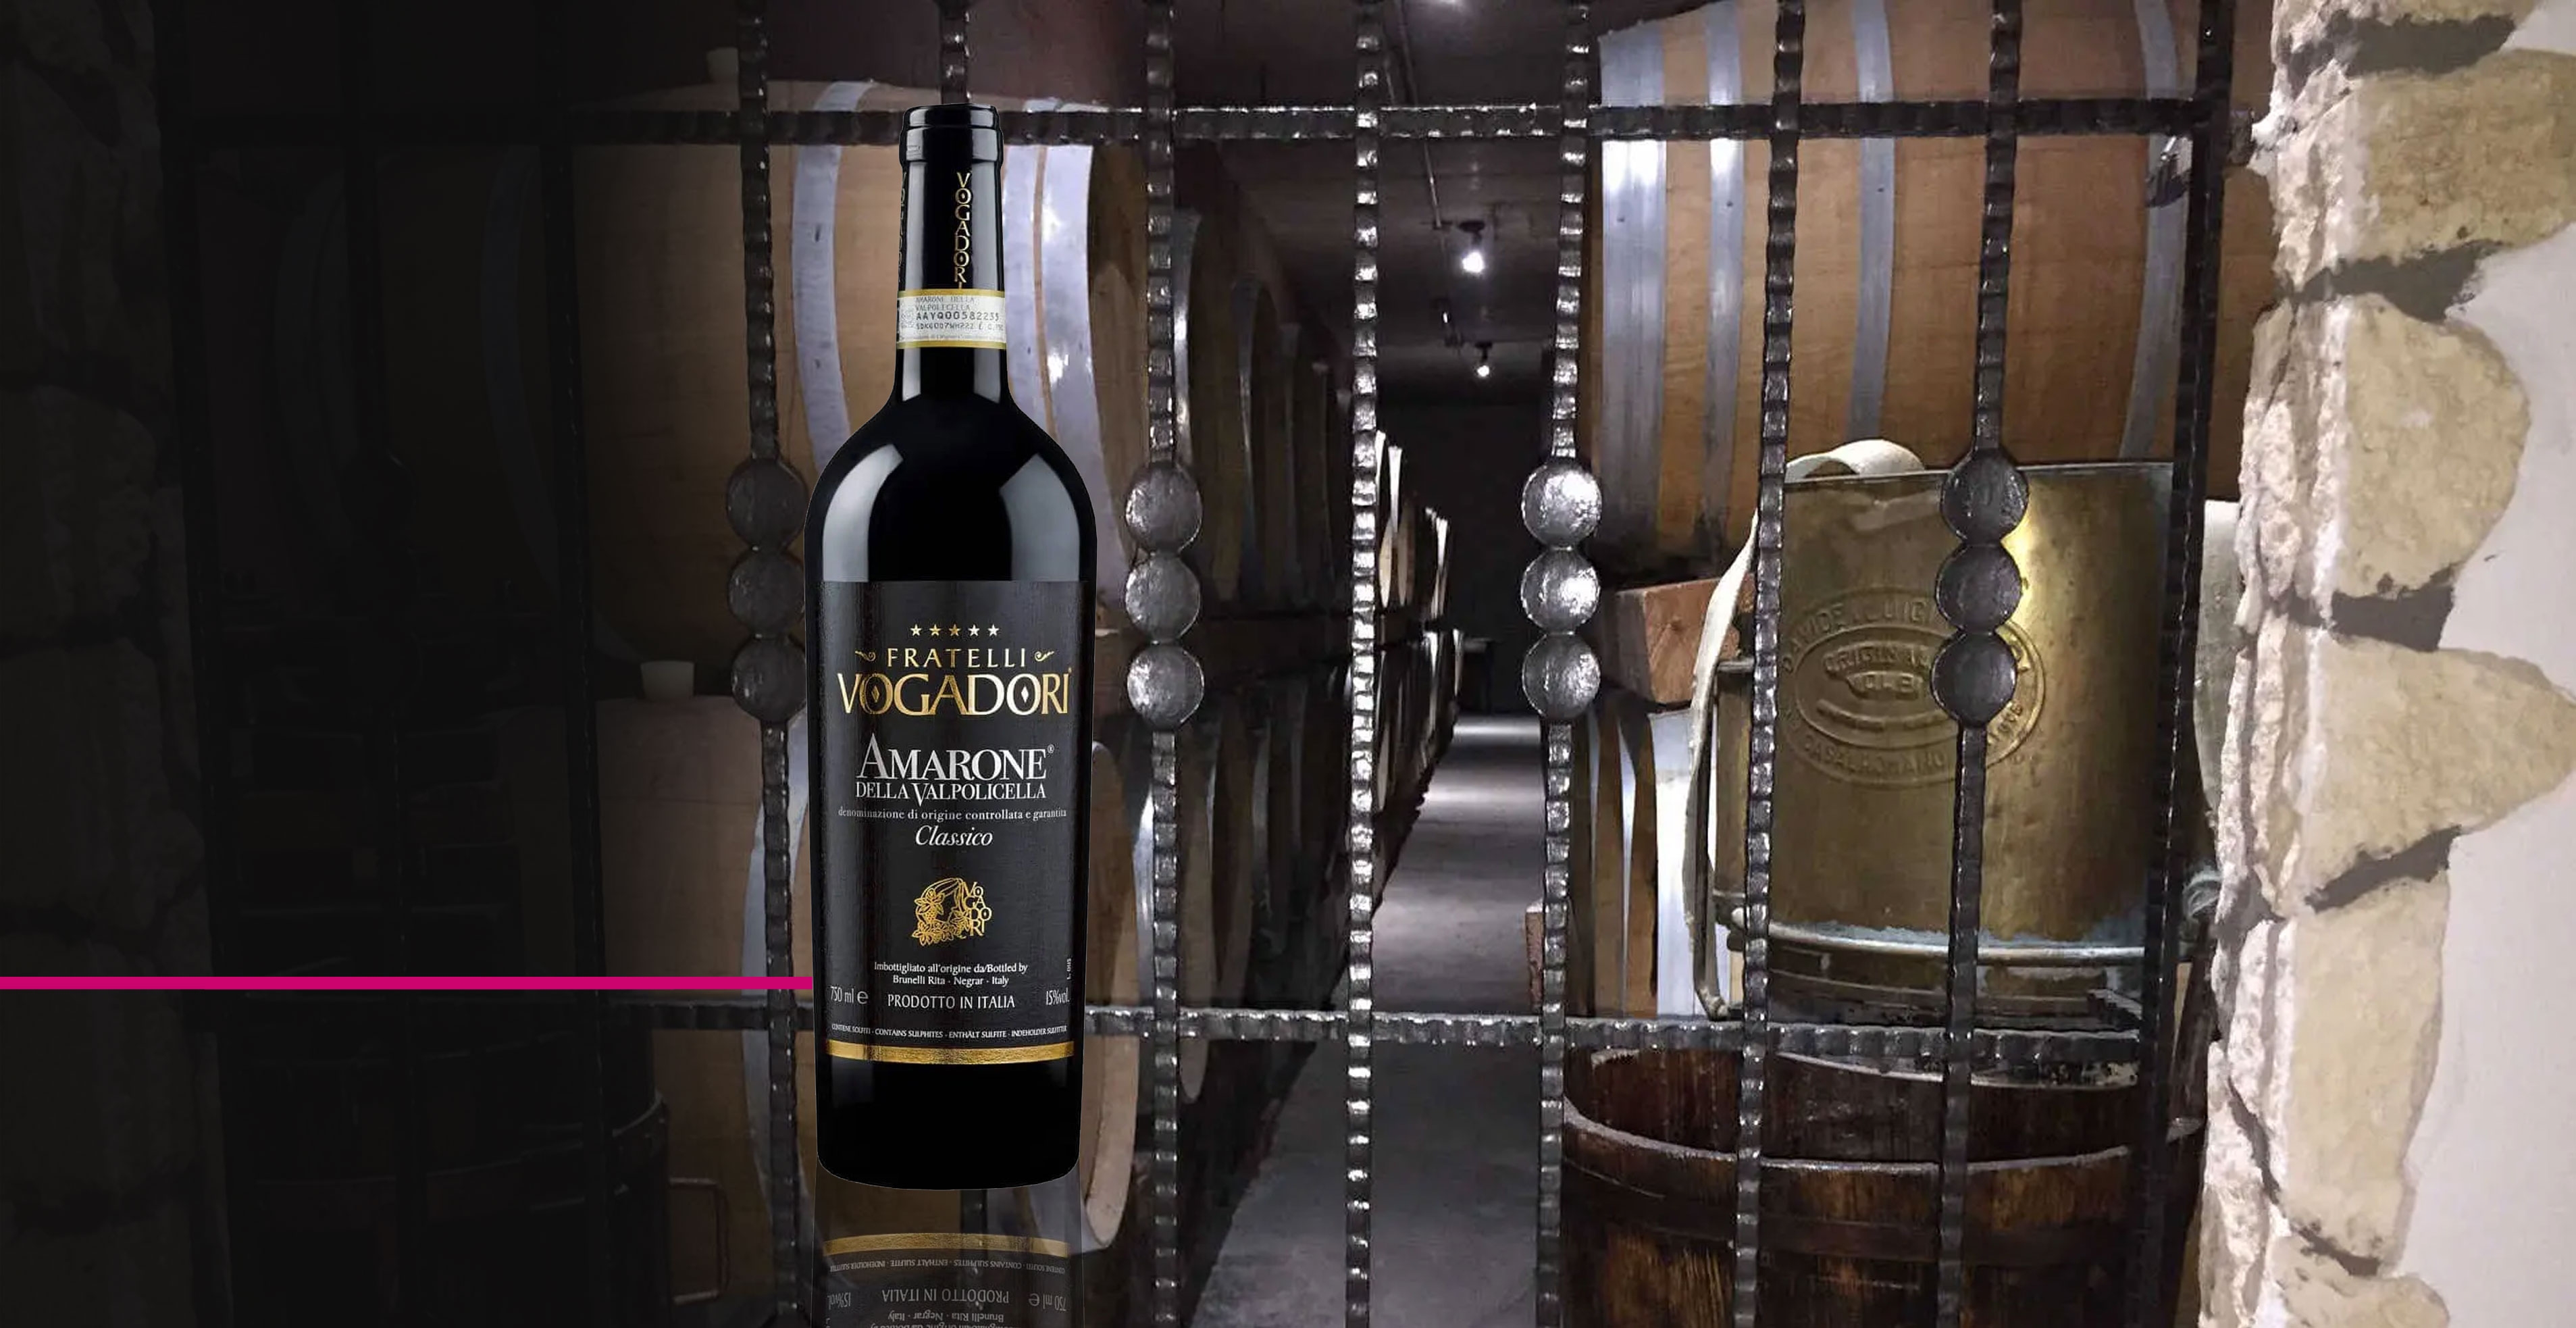 Vin rouge - Fratelli Vogadori - Amarone della valpolicella classico